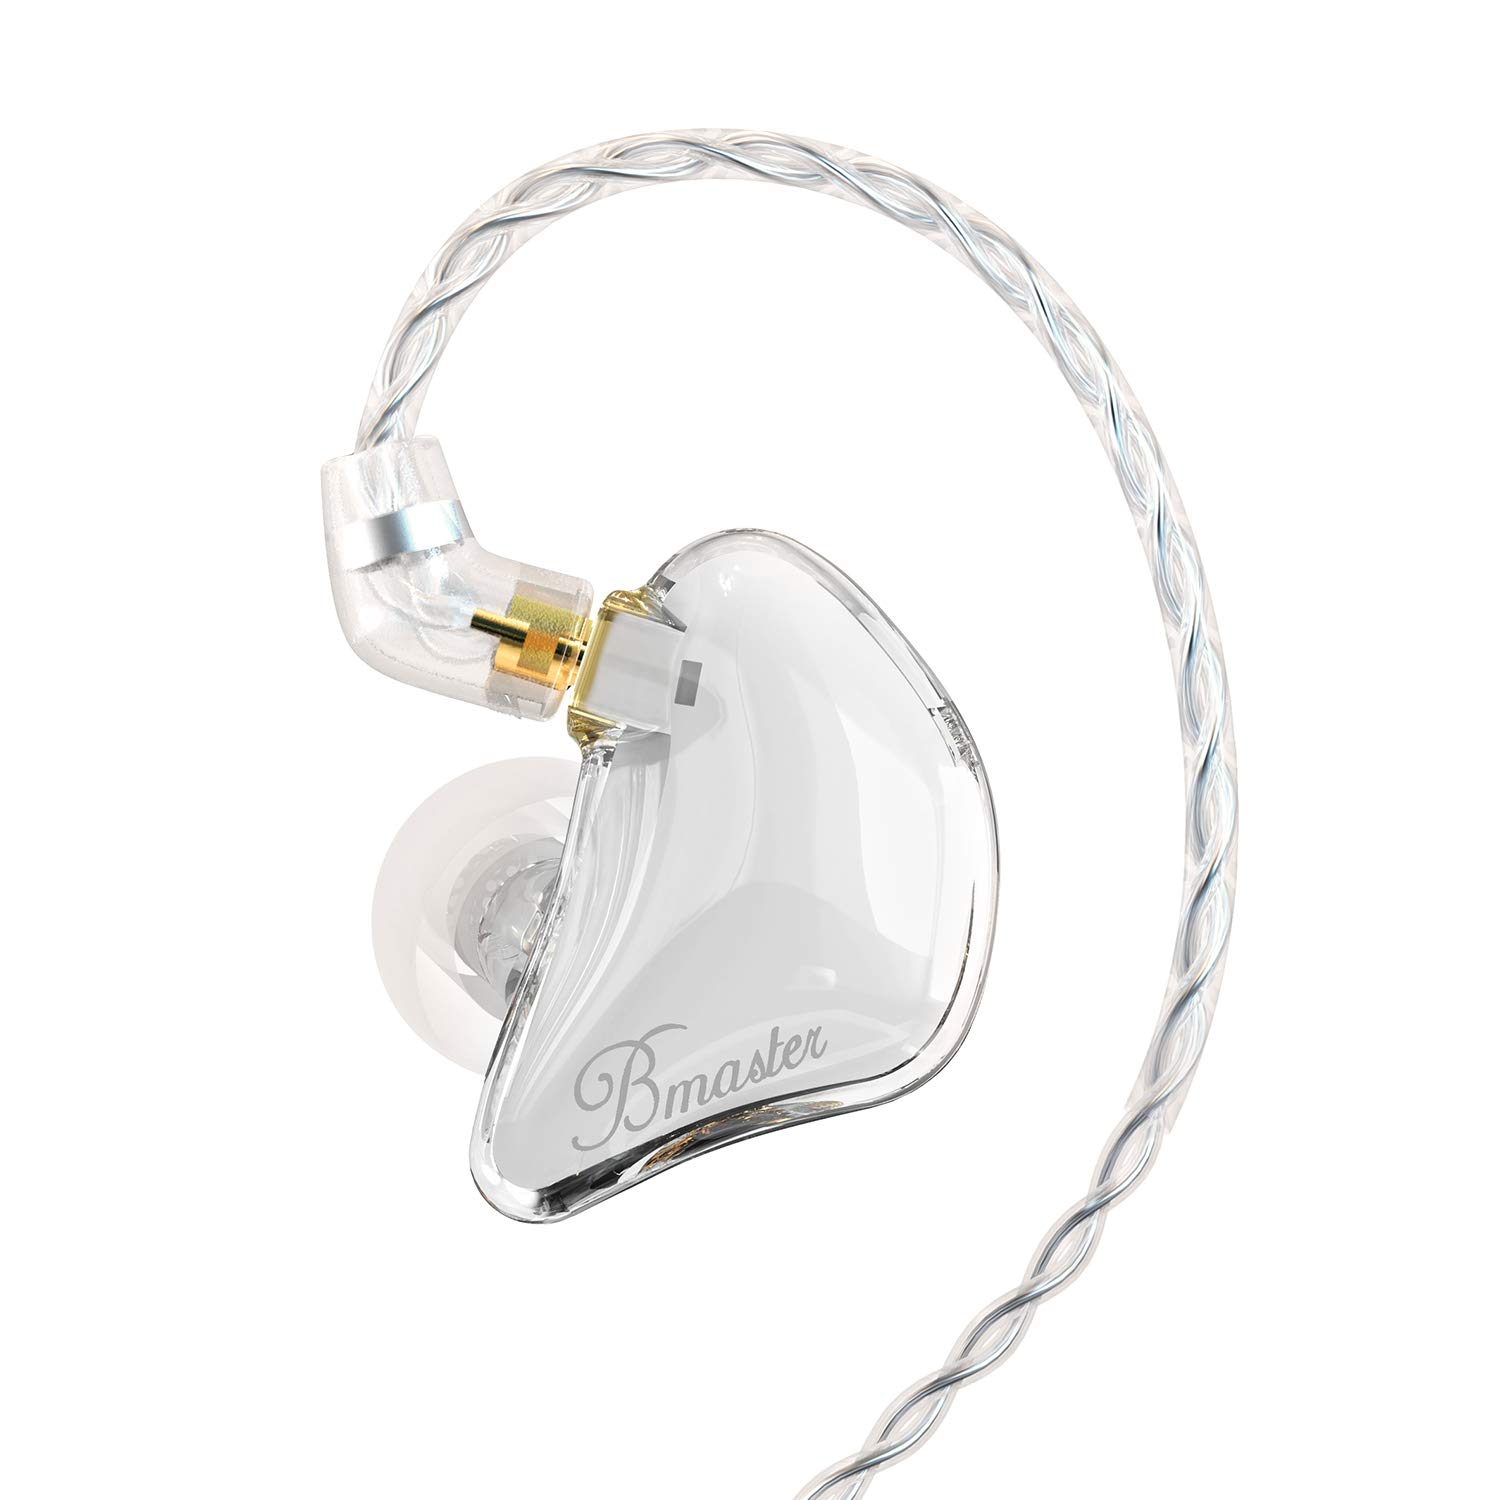 BASN Bmaster Triple Drivers Słuchawki douszne z monitorem dousznym i dwoma odłączanymi kablami Pasujące do ucha Odpowiednie dla inżyniera dźwięku i muzyka (białe)